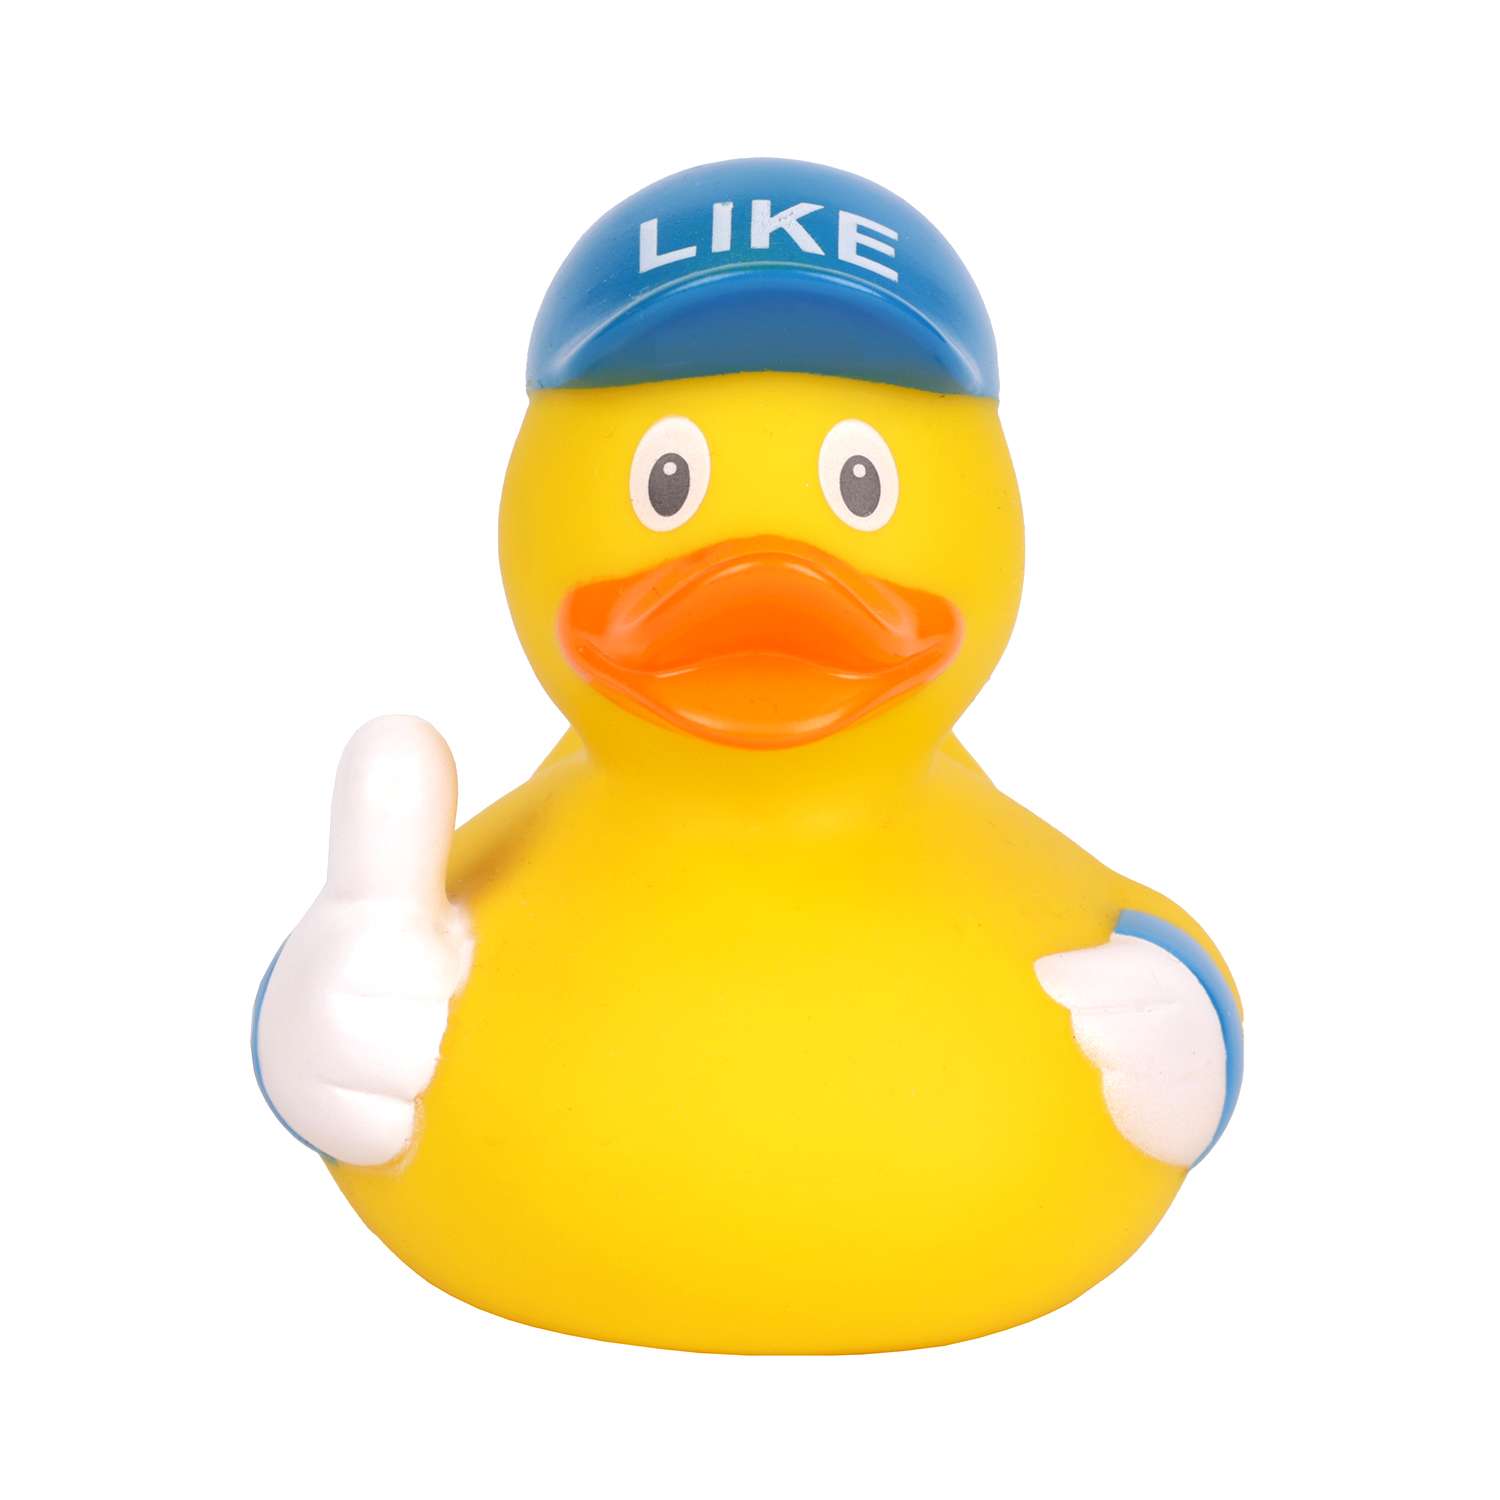 Игрушка для ванны сувенир Funny ducks Like уточка 1312 - фото 2